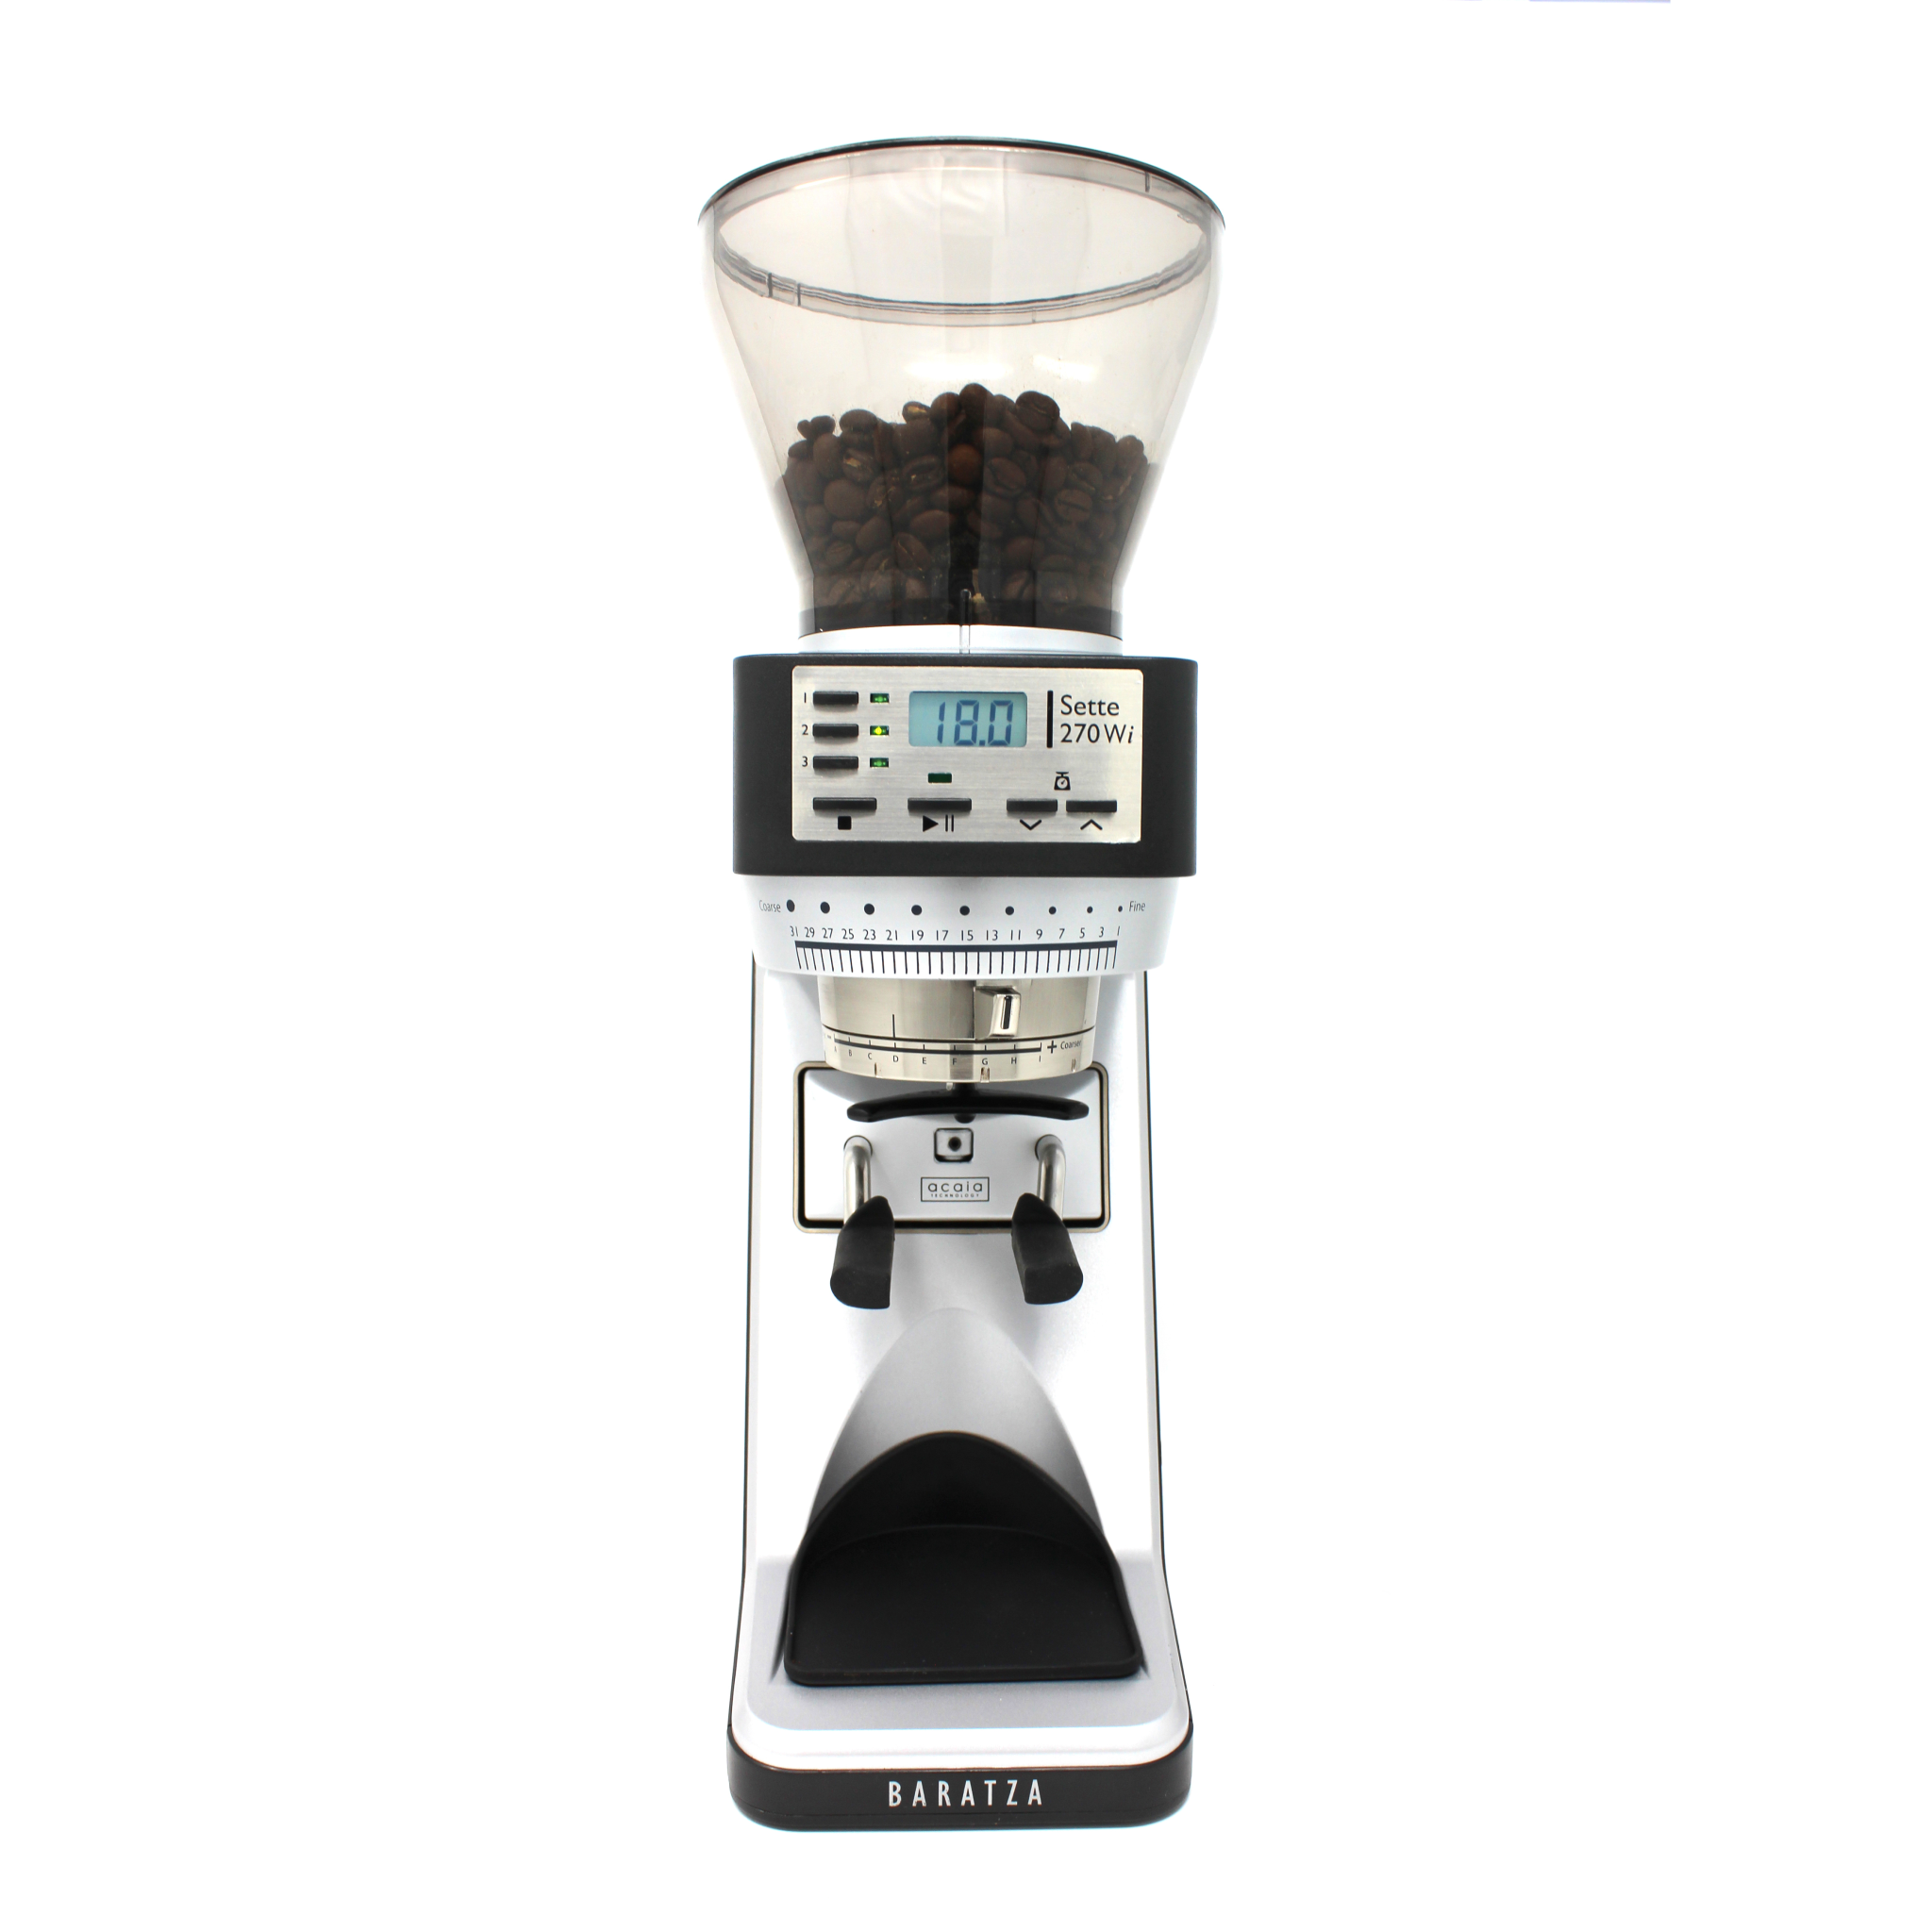 Baratza Sette 270Wi, Espresso Grinder, 120V